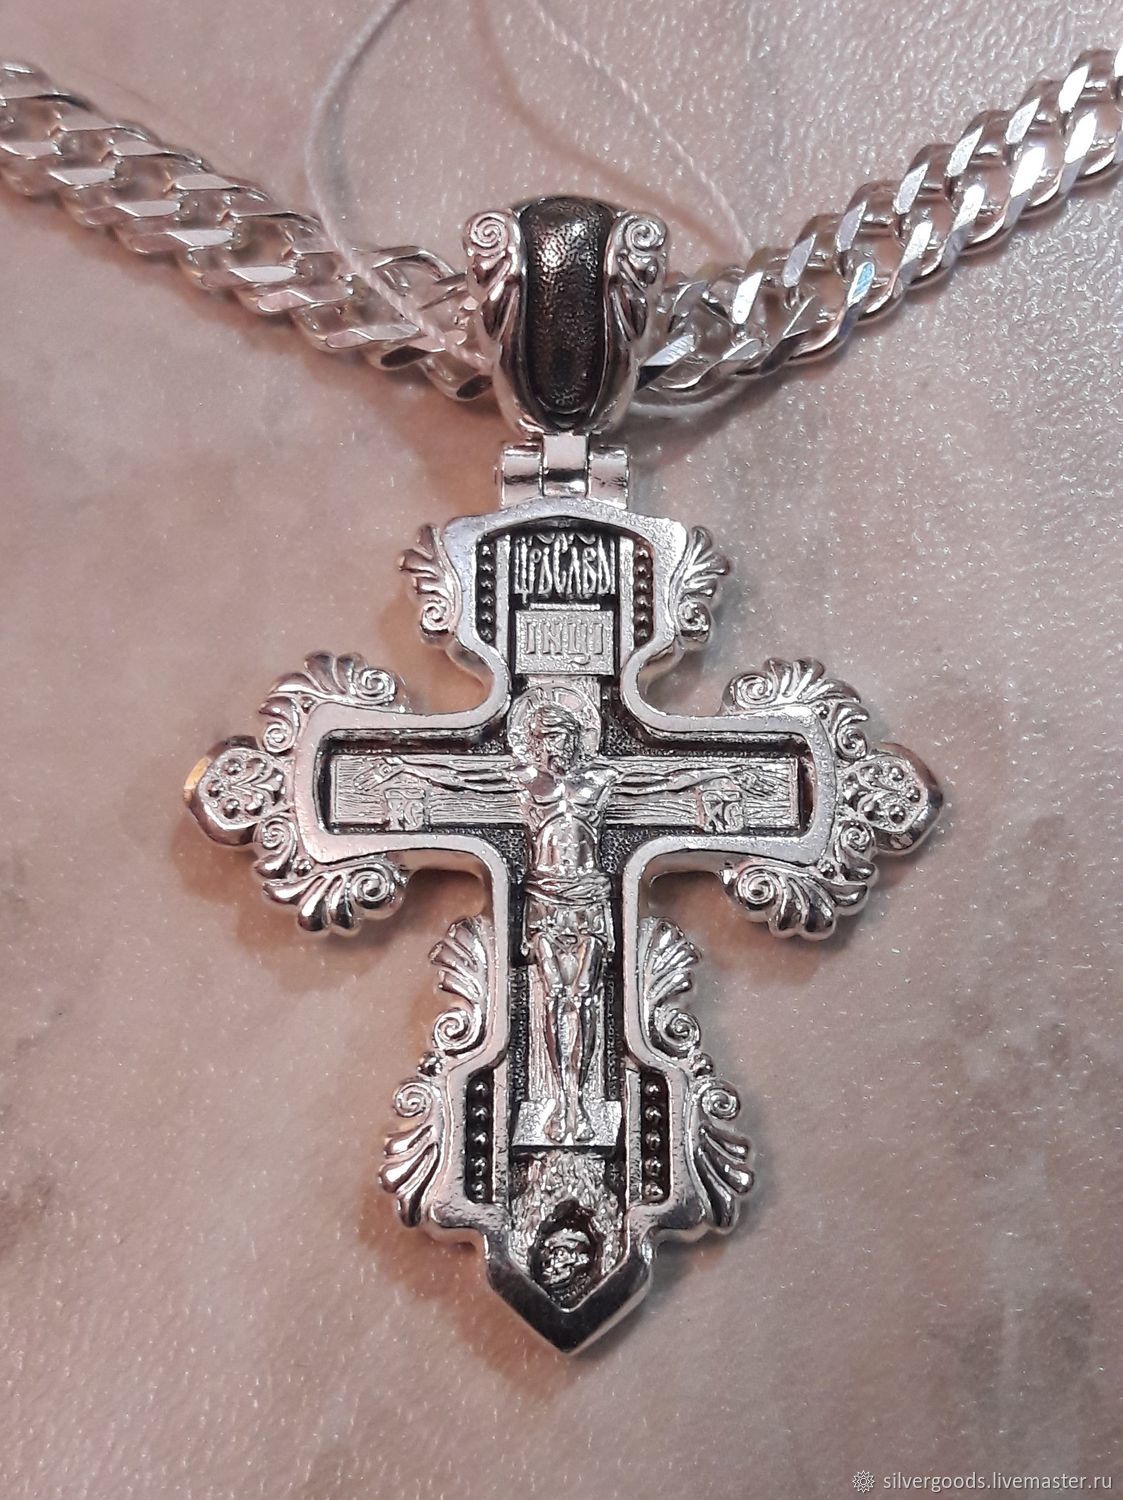 Купить мужской православный крест. Православный крест, серебряный. Крестик серебряный мужской православный. Крест серебро. Большие серебряные кресты.